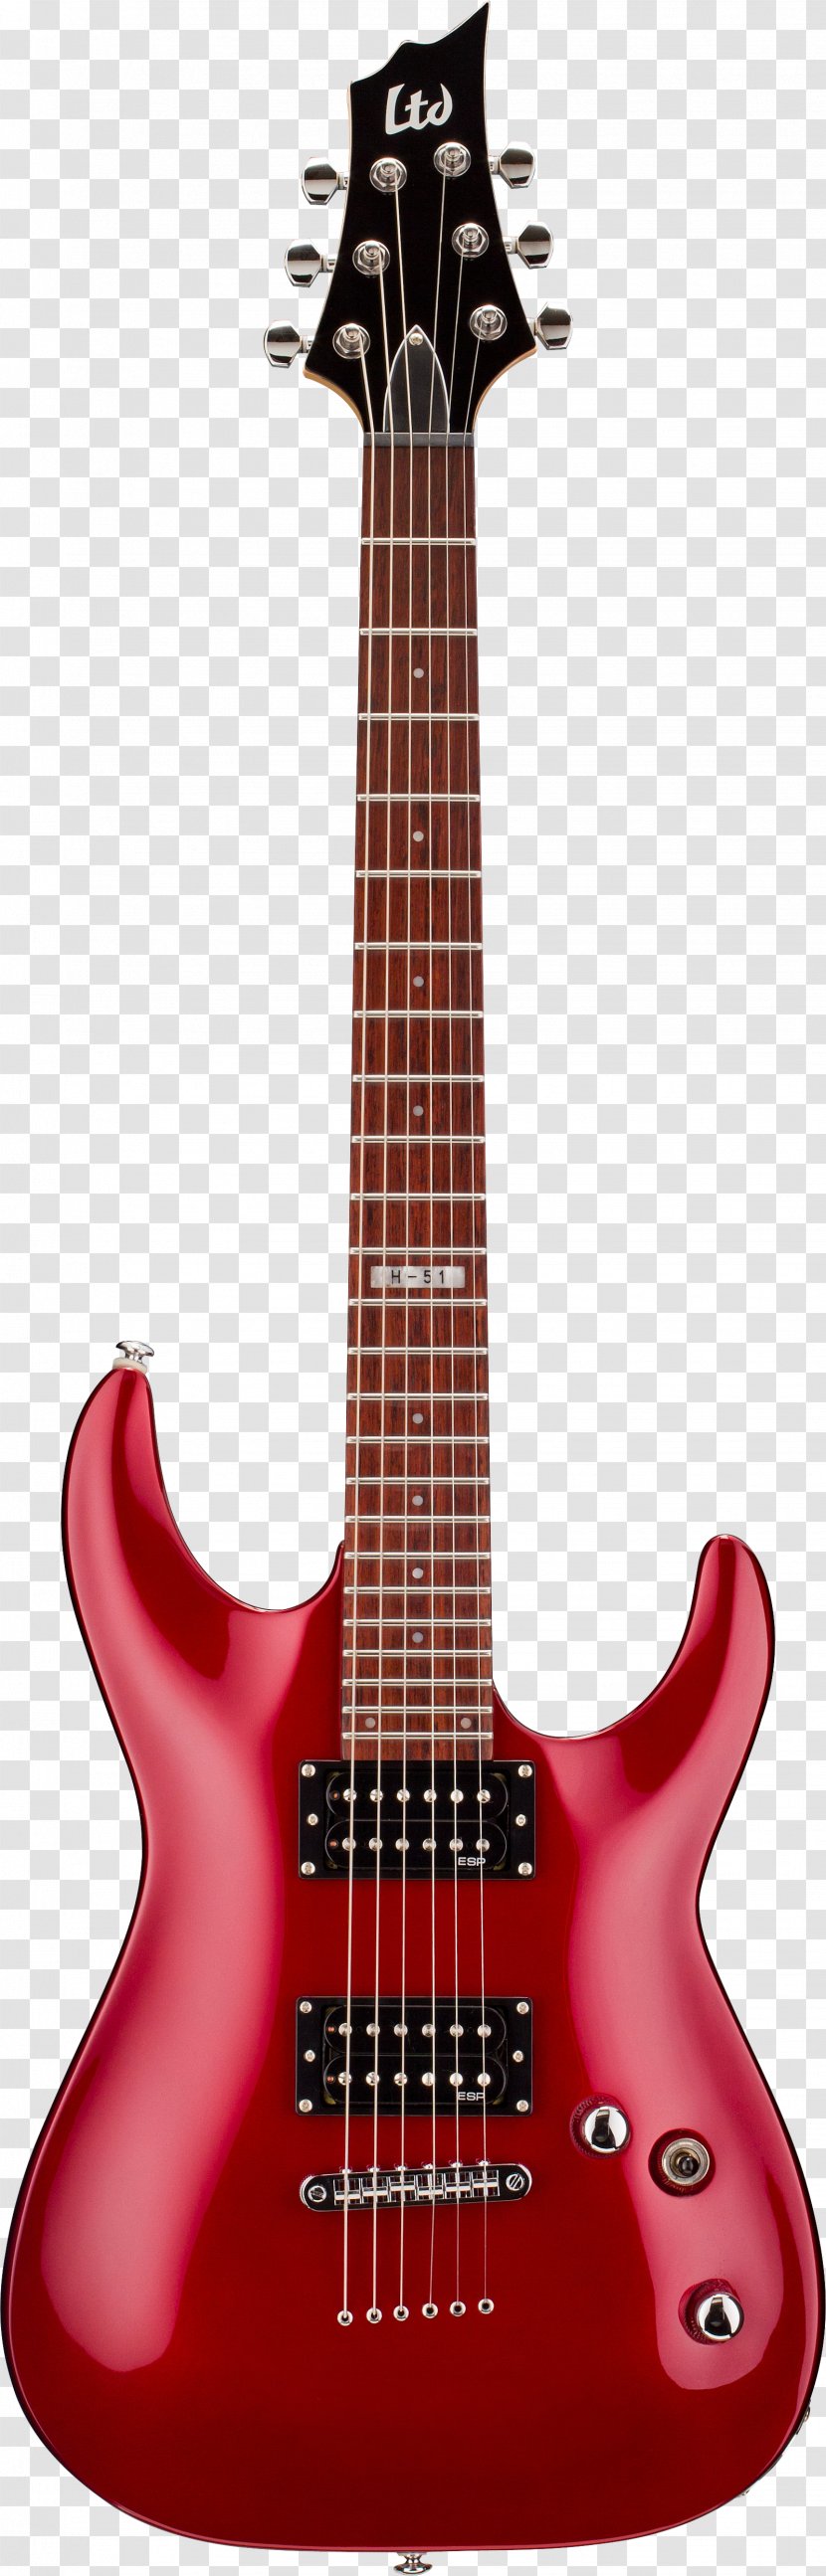 ESP LTD EC-1000 F-10 Guitars Electric Guitar - Solid Body - Image Transparent PNG